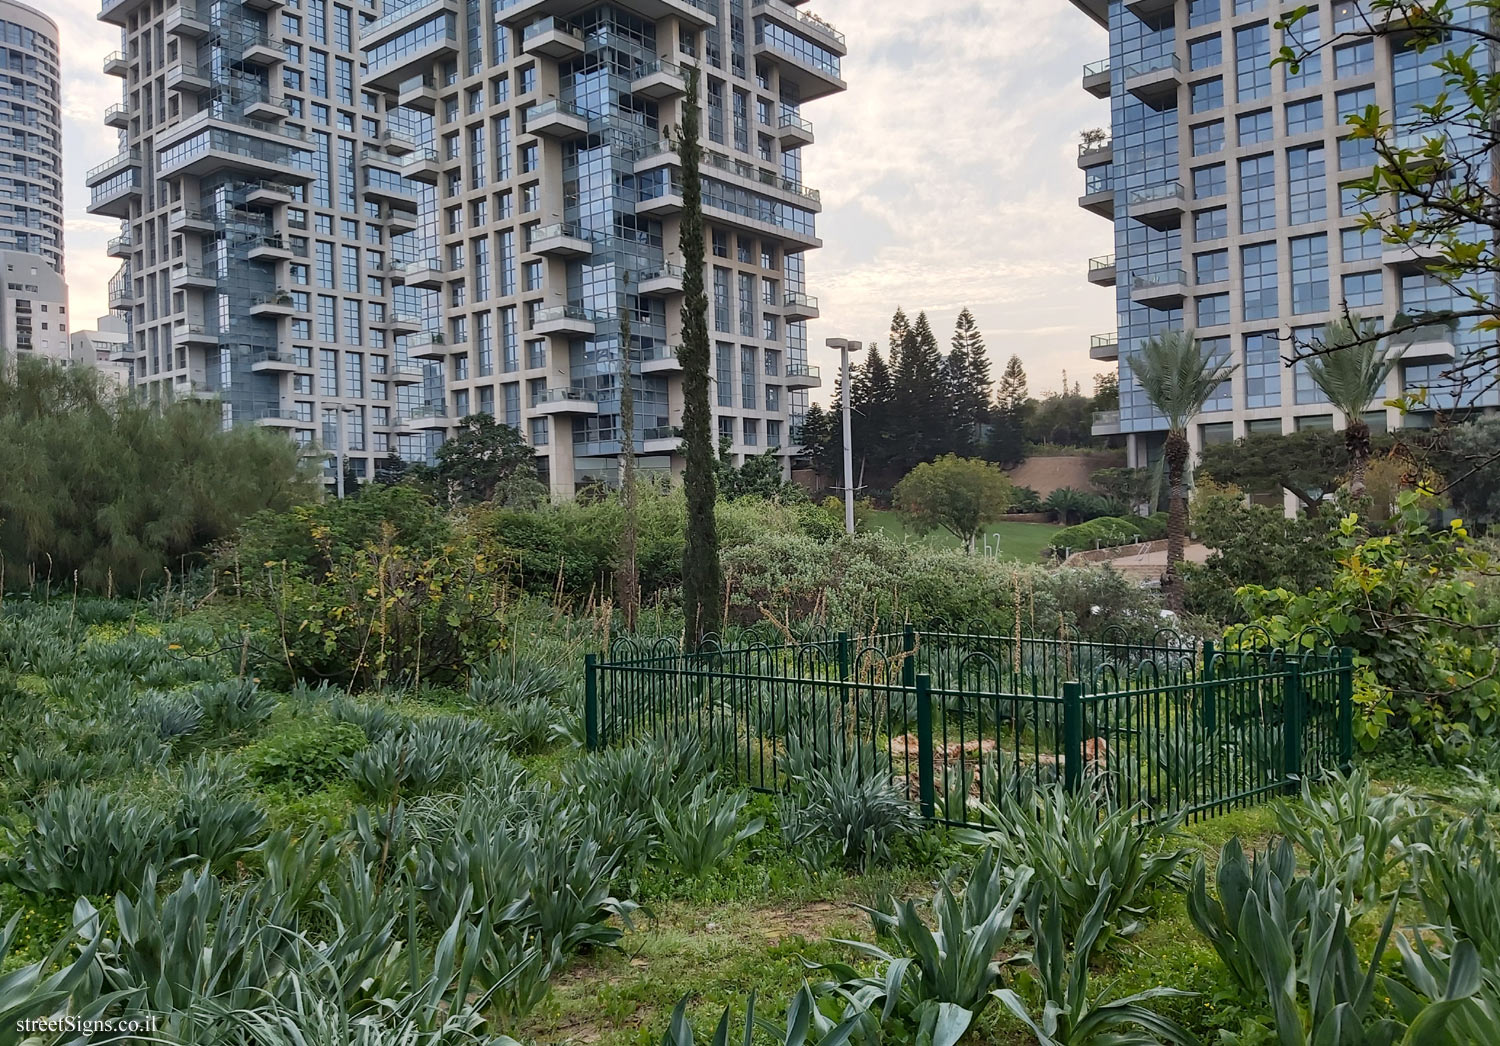 Tel Aviv - Community Urban Nature Park - Pinkas St 59, Tel Aviv-Yafo, Israel